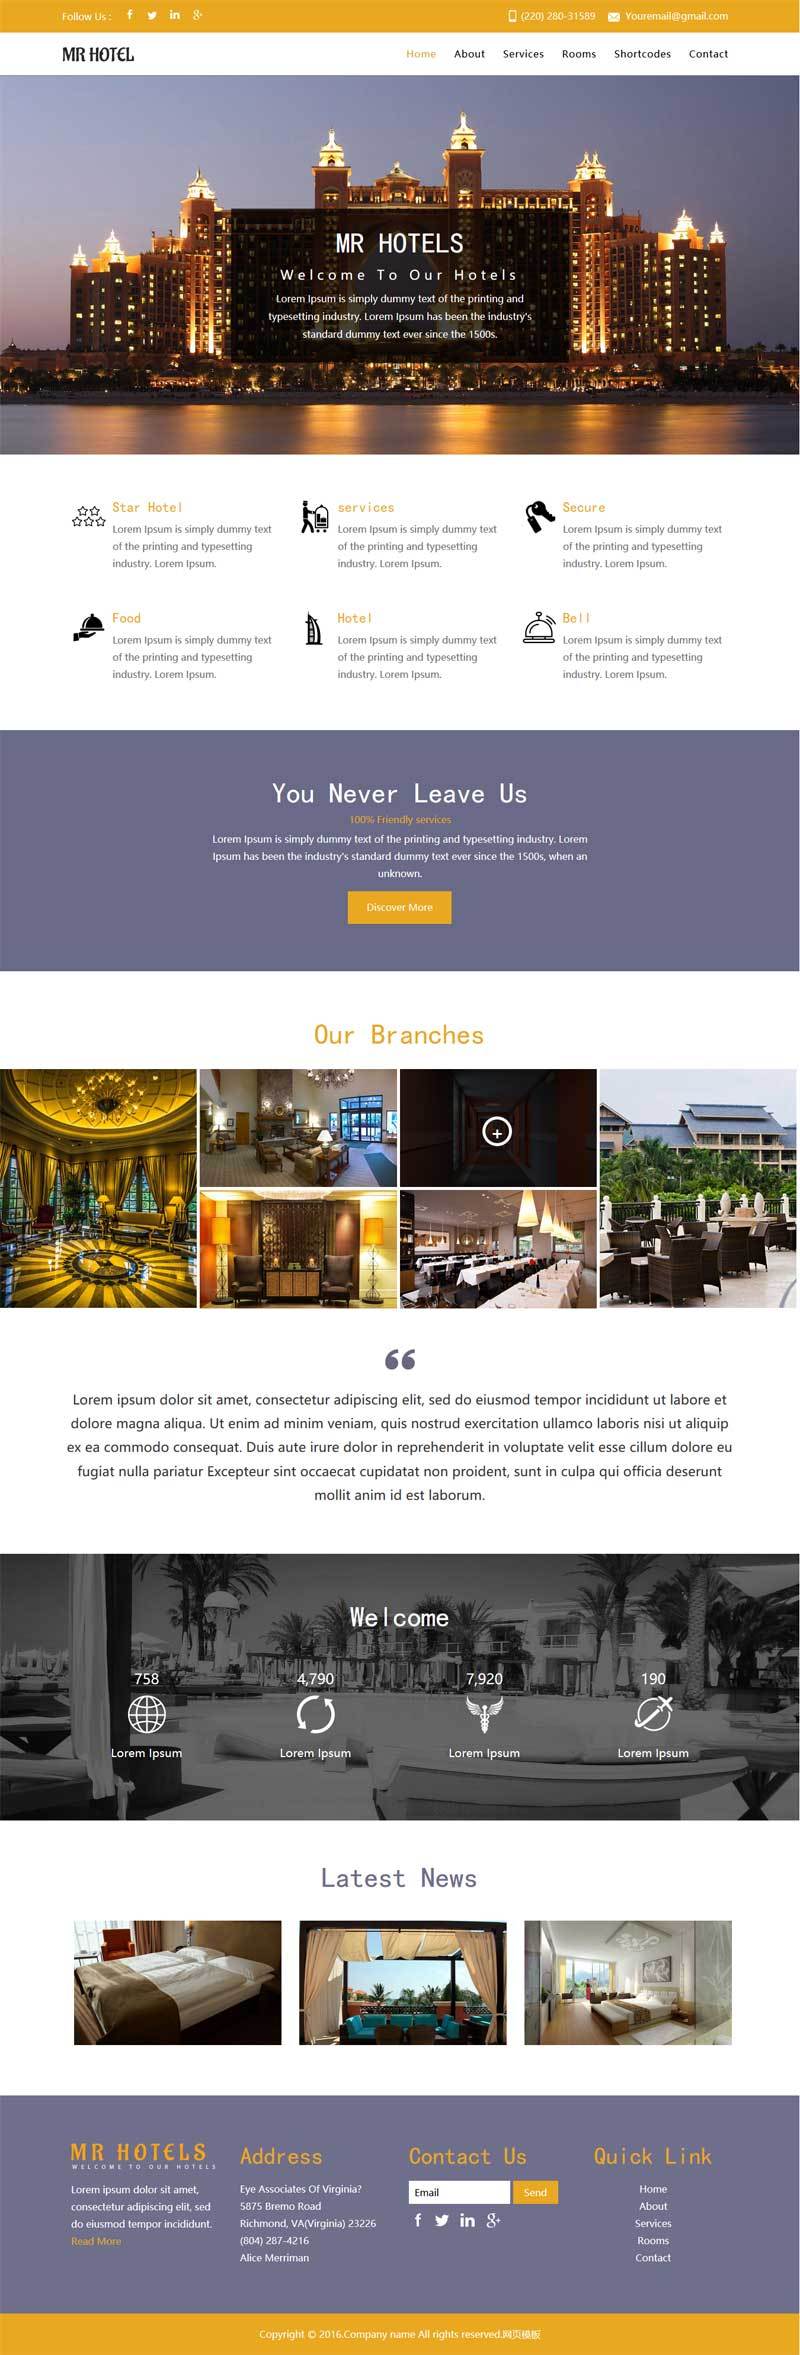 酒店信息展示企业网站欧美金黄色风格的模板下载